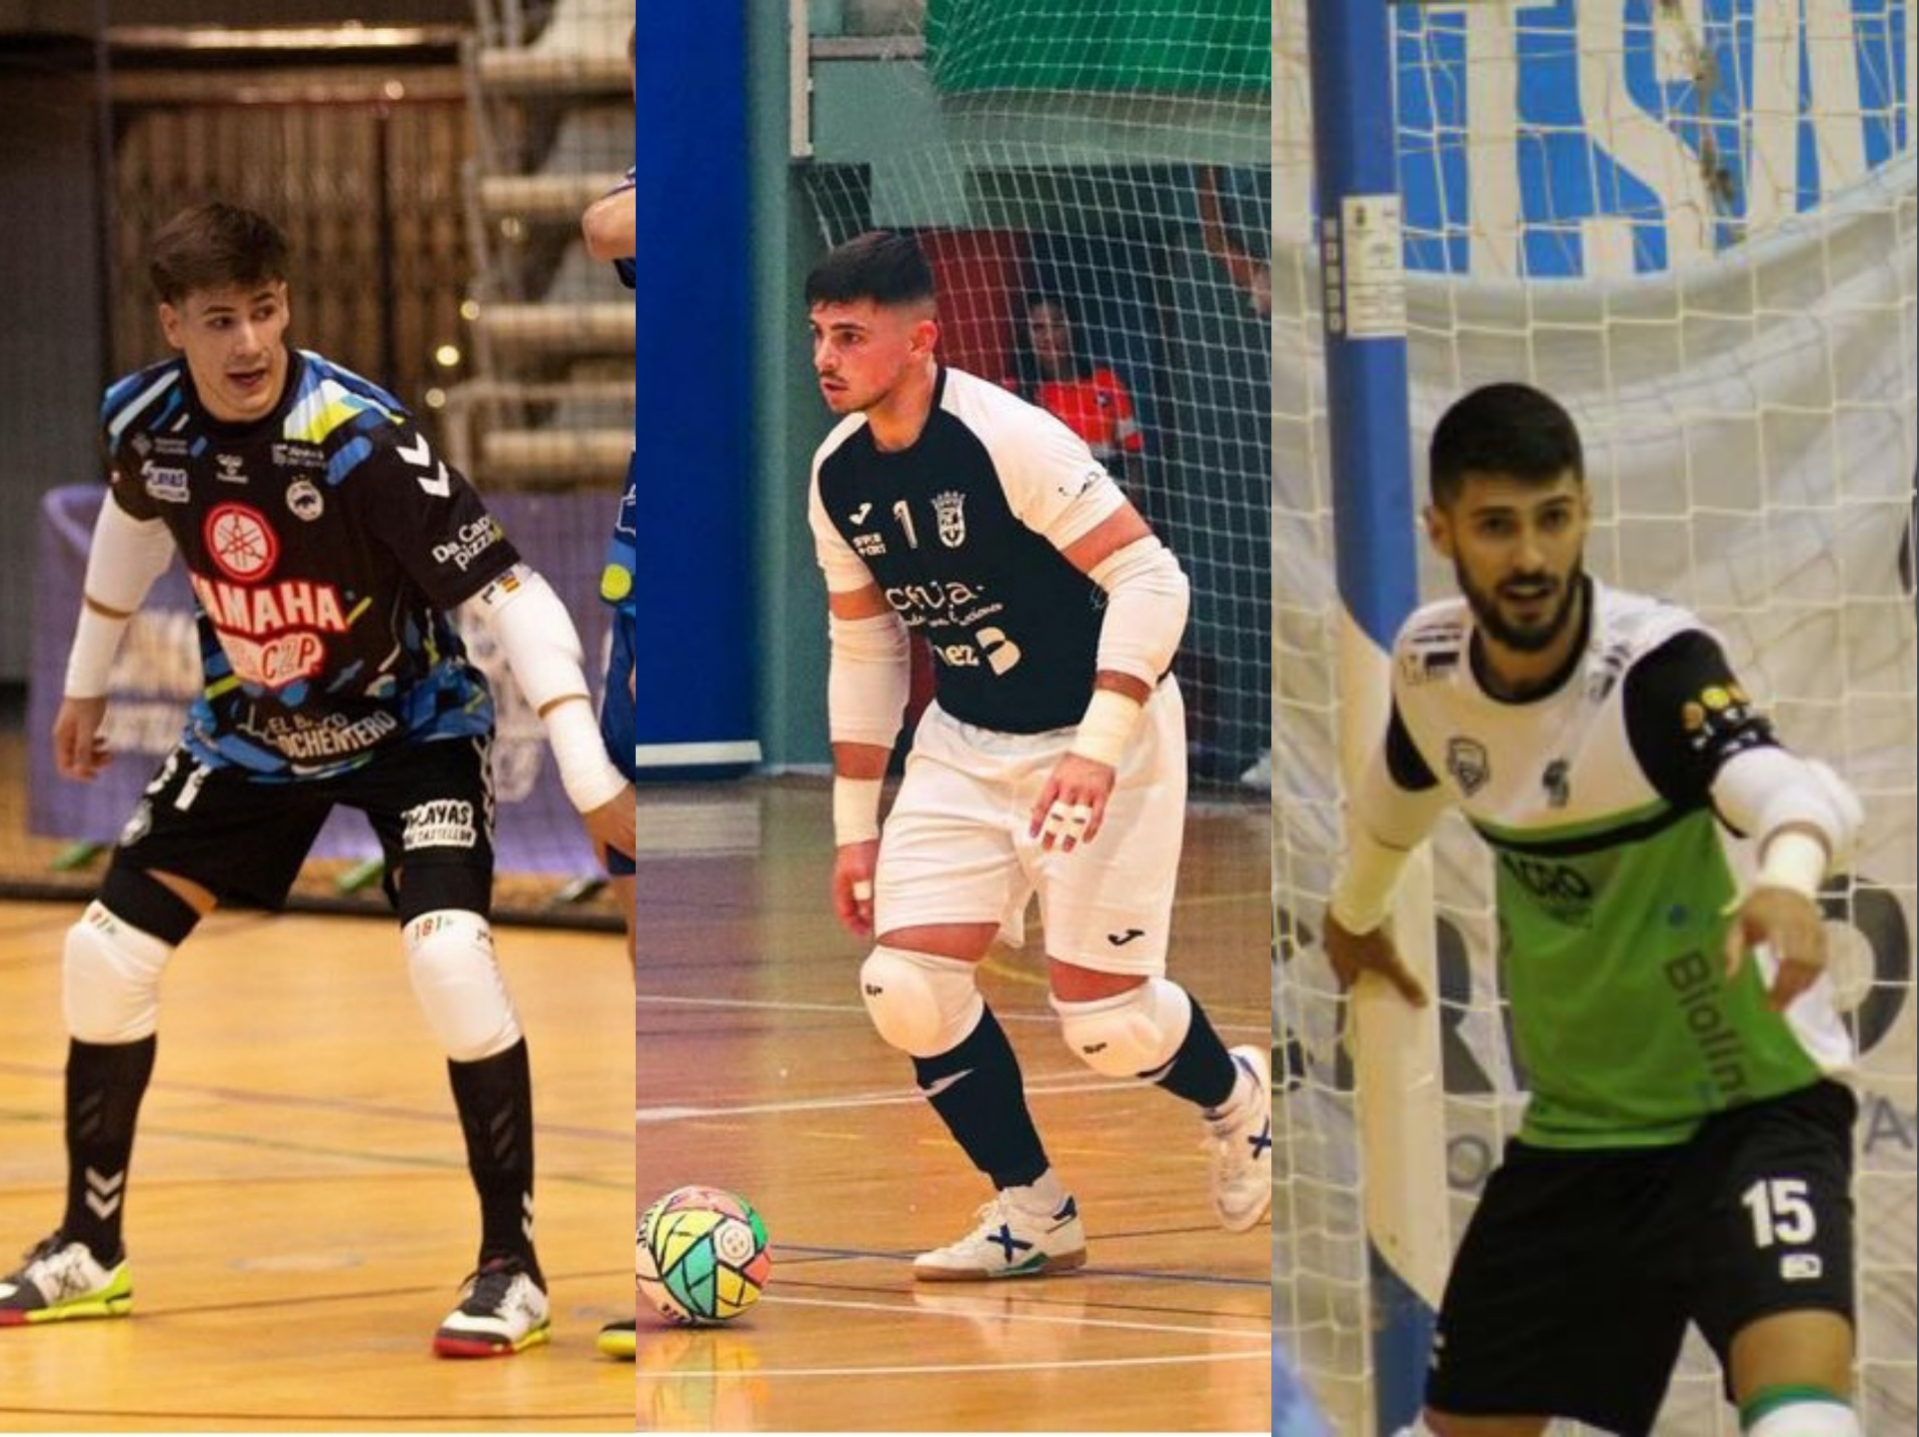 Buenos resultados para los equipos de los tres porteros jienenses de la Segunda División de Futsal